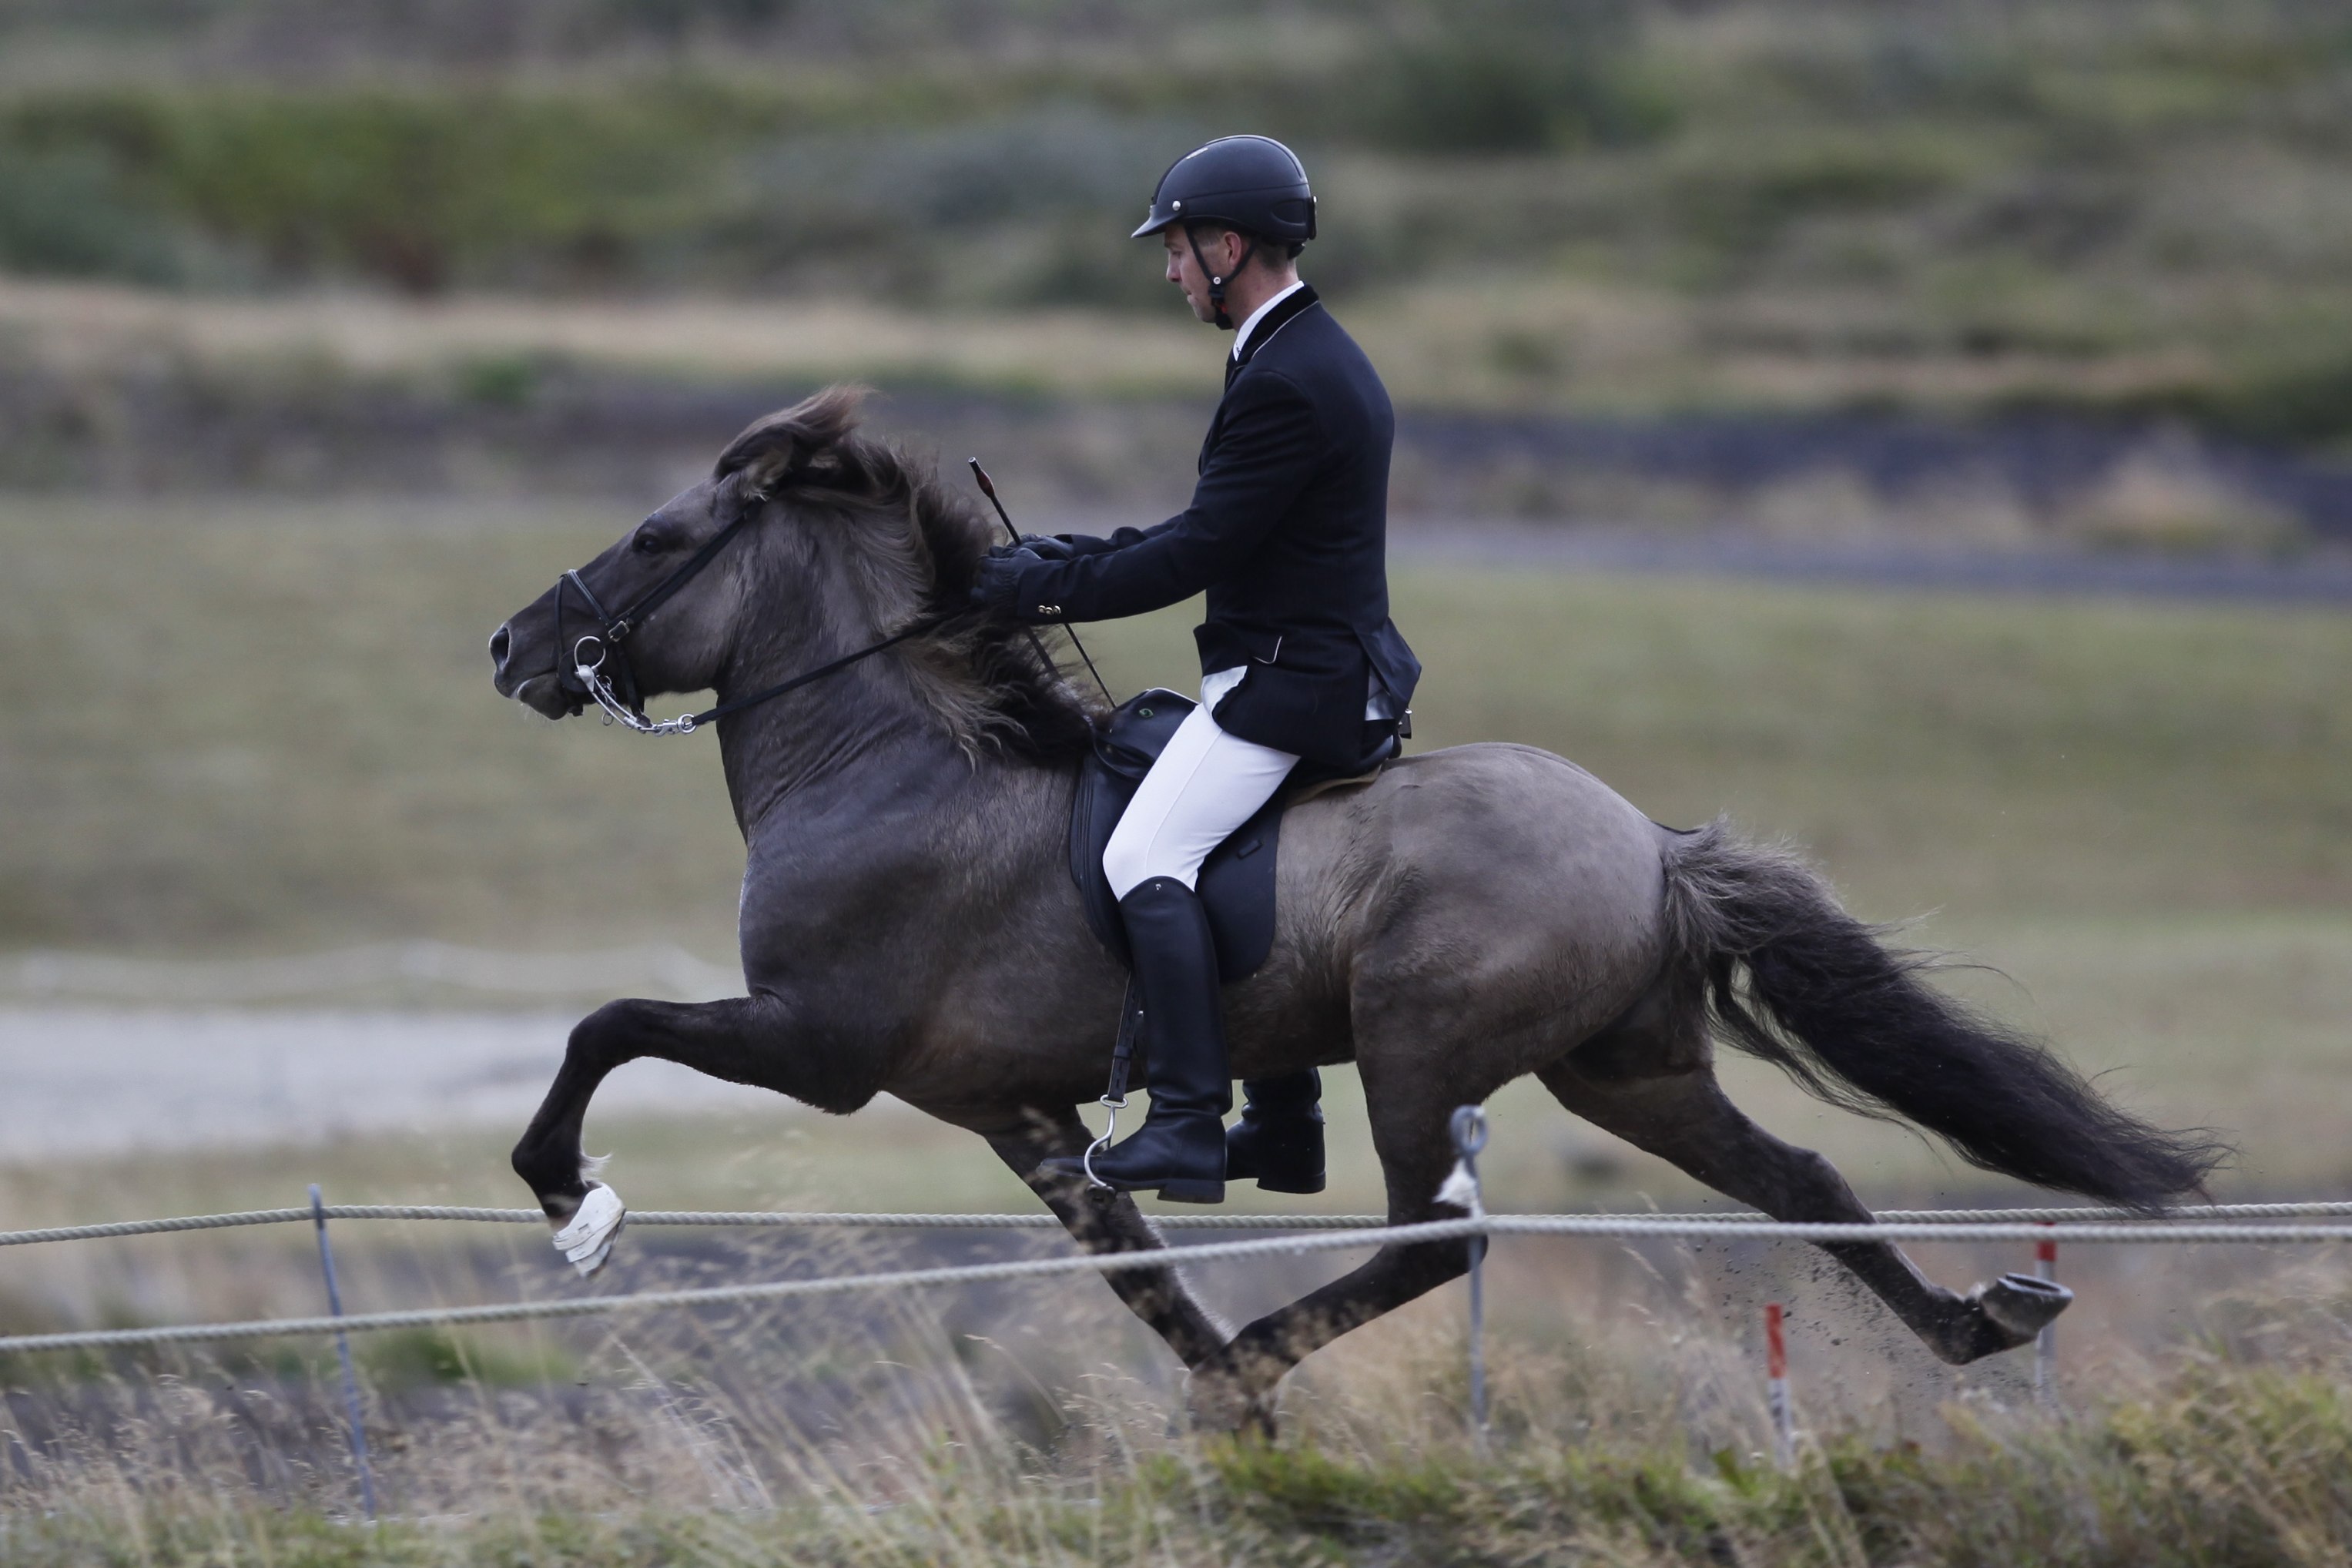 Il cavallo islandese e la sua particolare andatura: il tölt